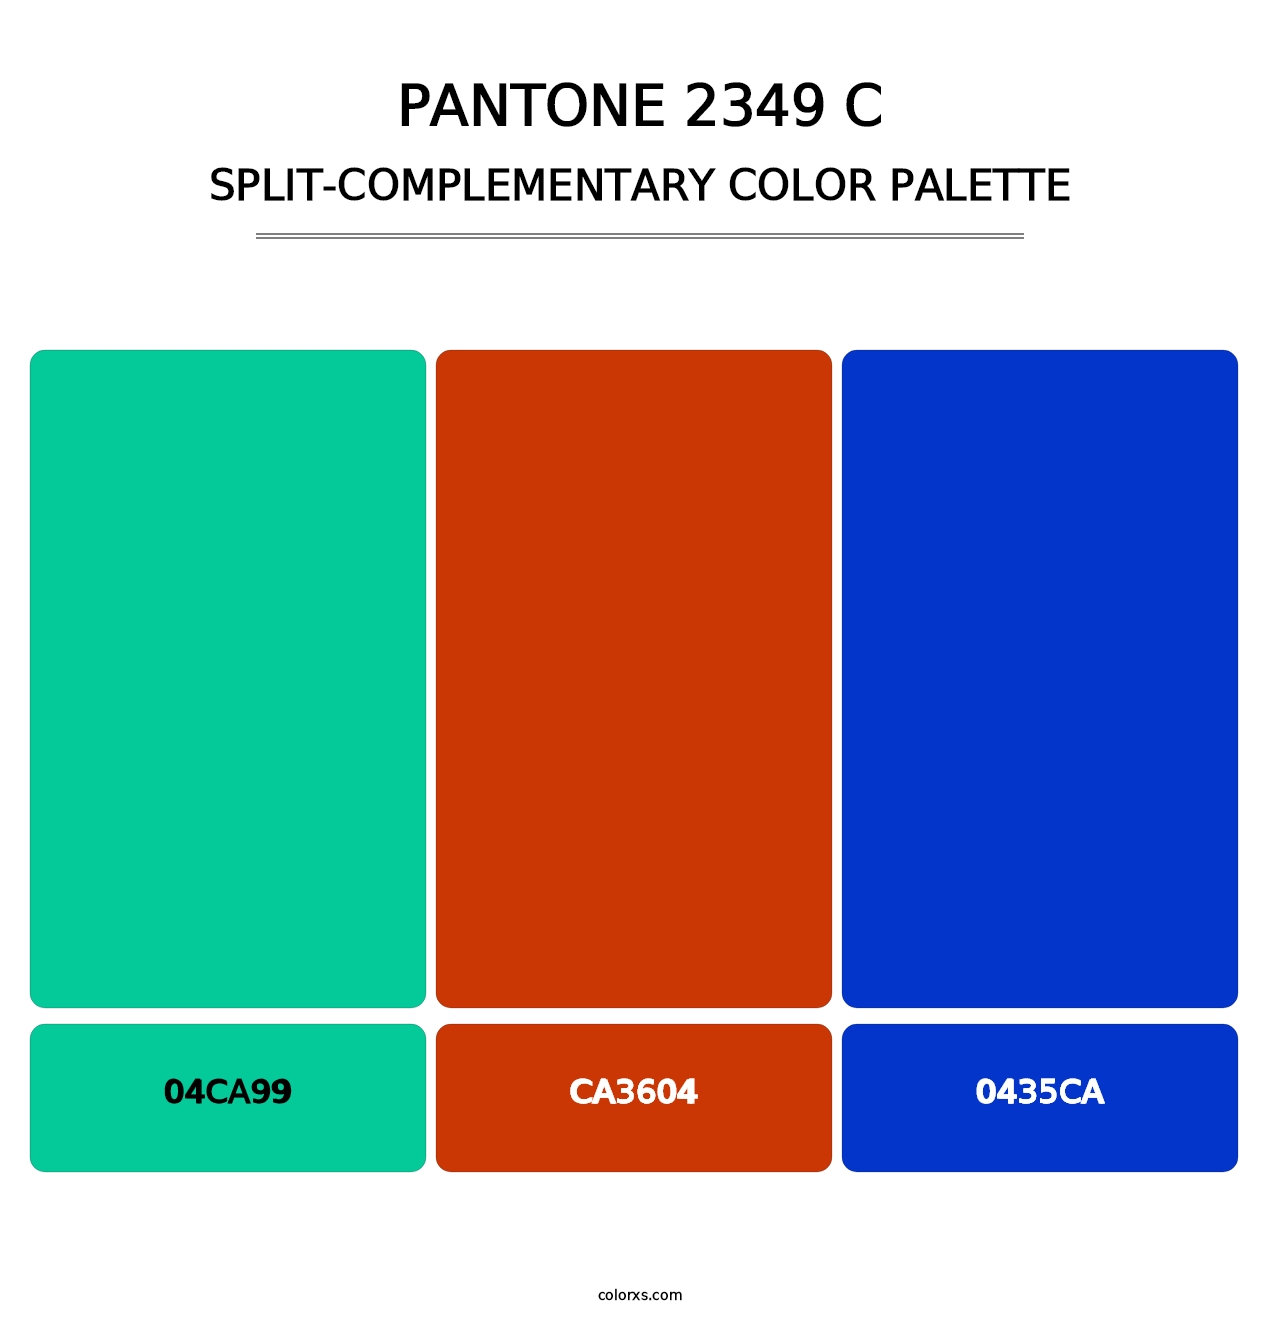 PANTONE 2349 C - Split-Complementary Color Palette